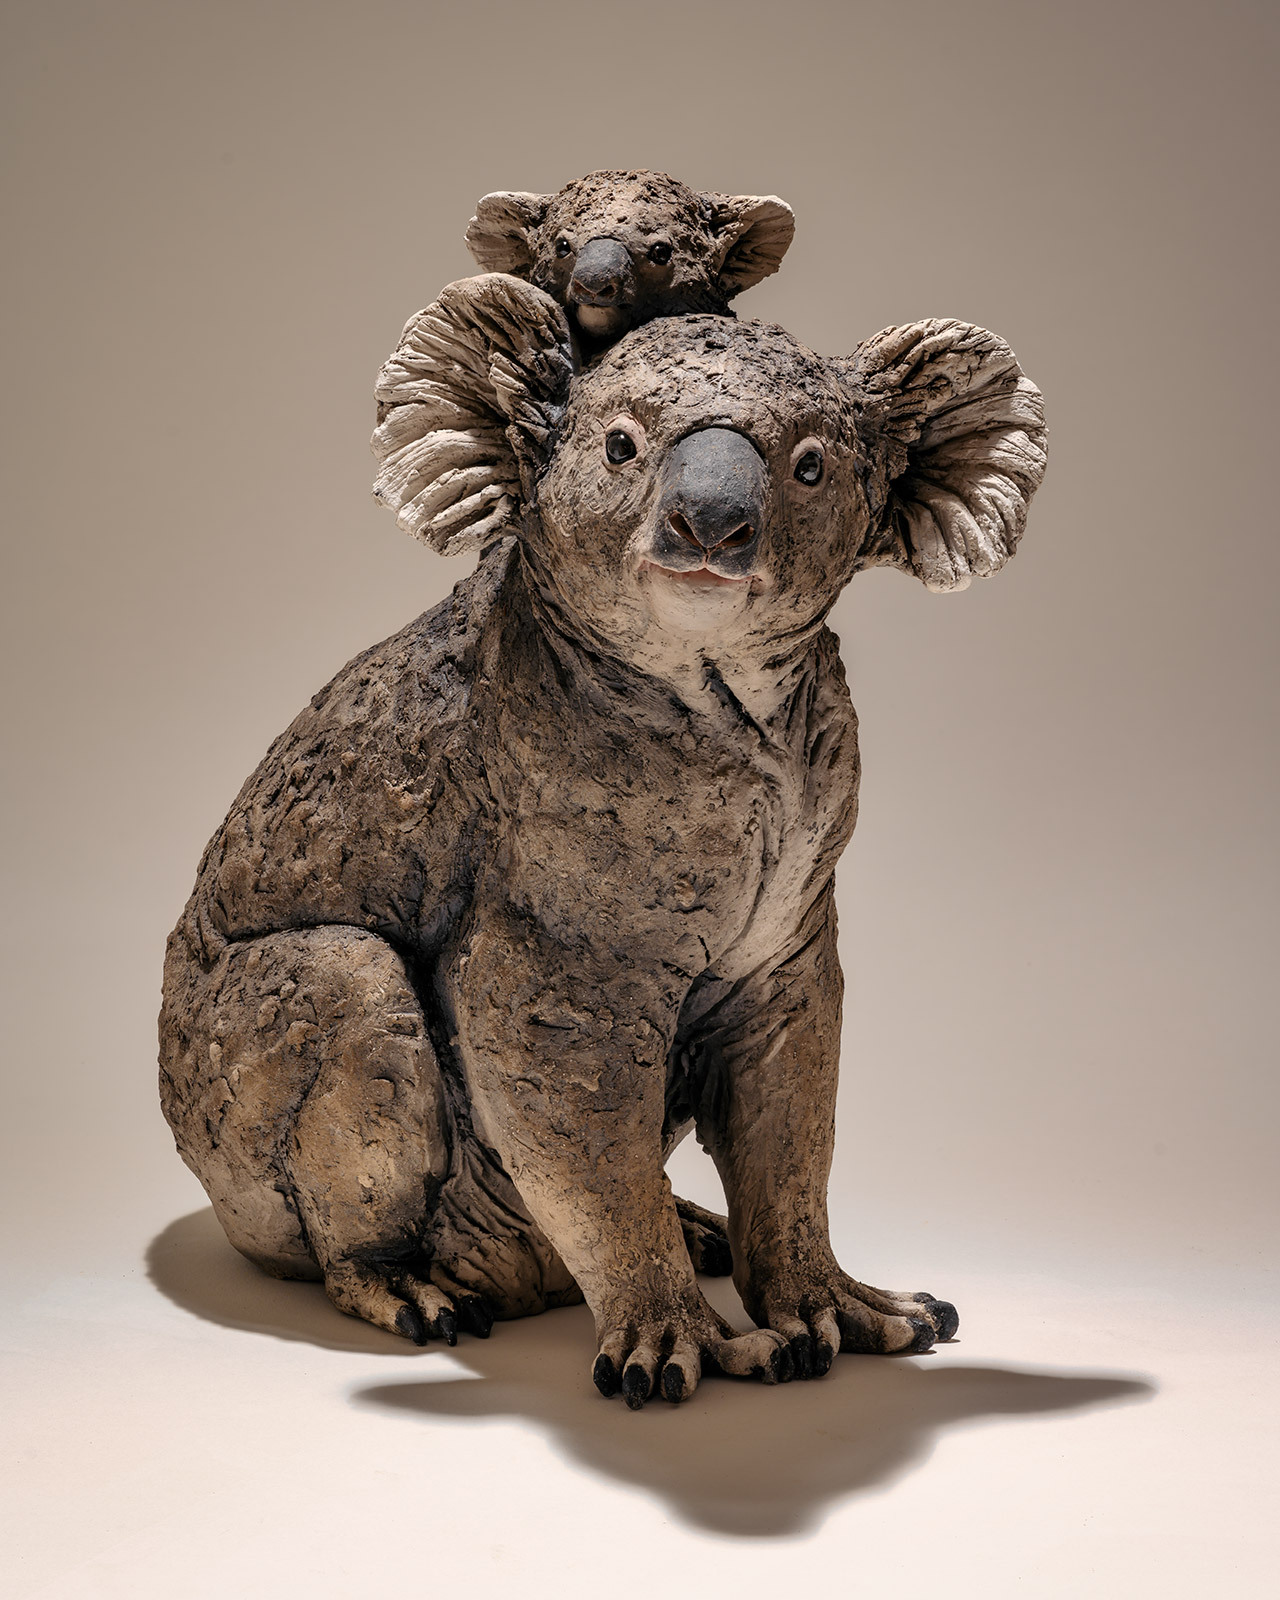 Win a Koala Sculpture